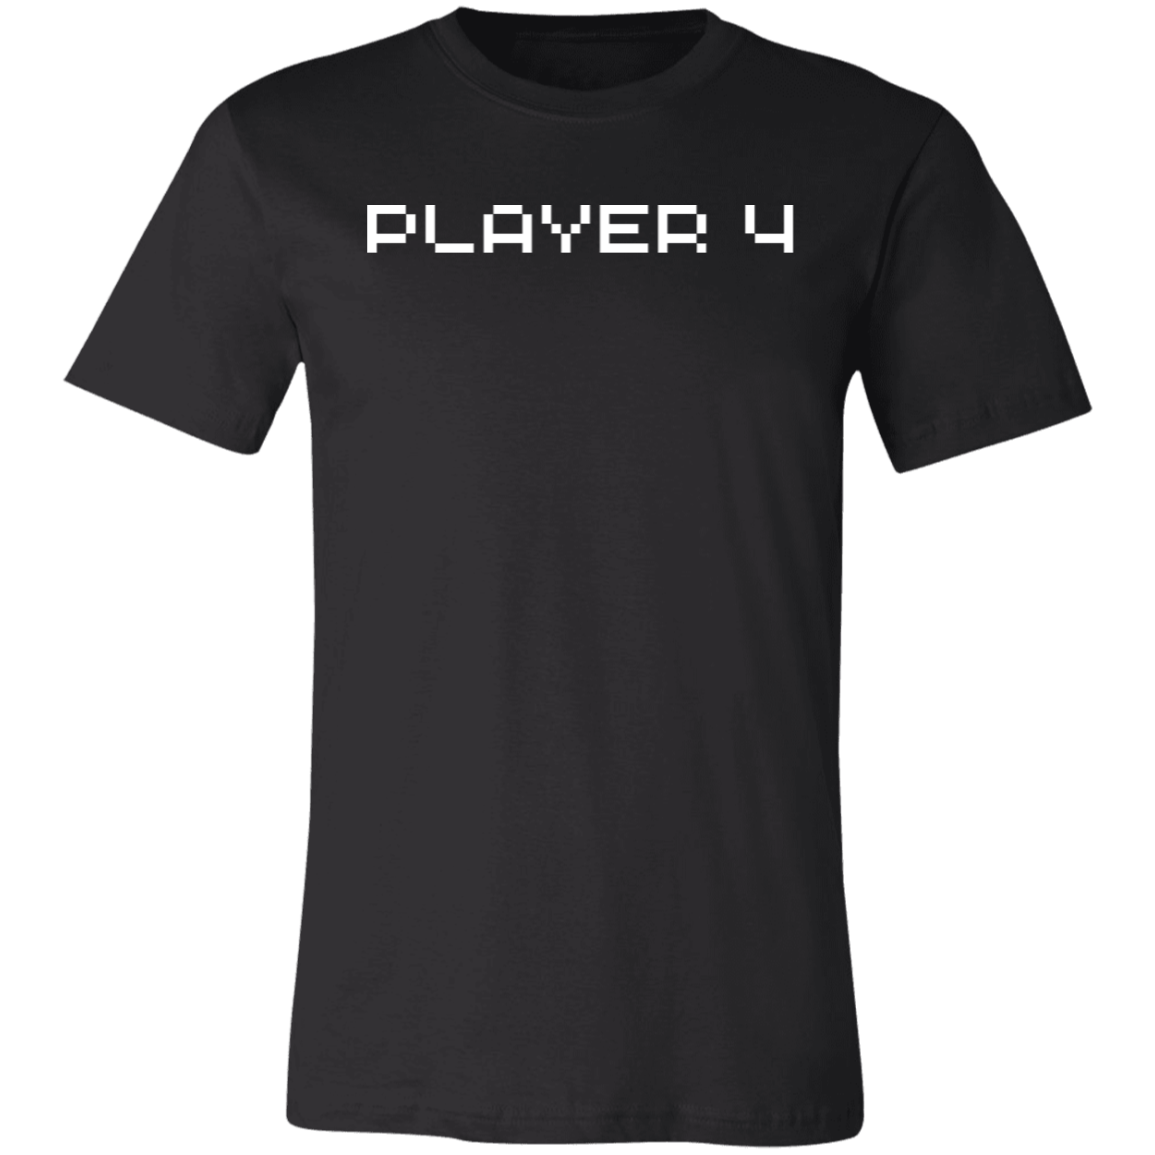 Player 4 Short-Sleeve T-Shirt